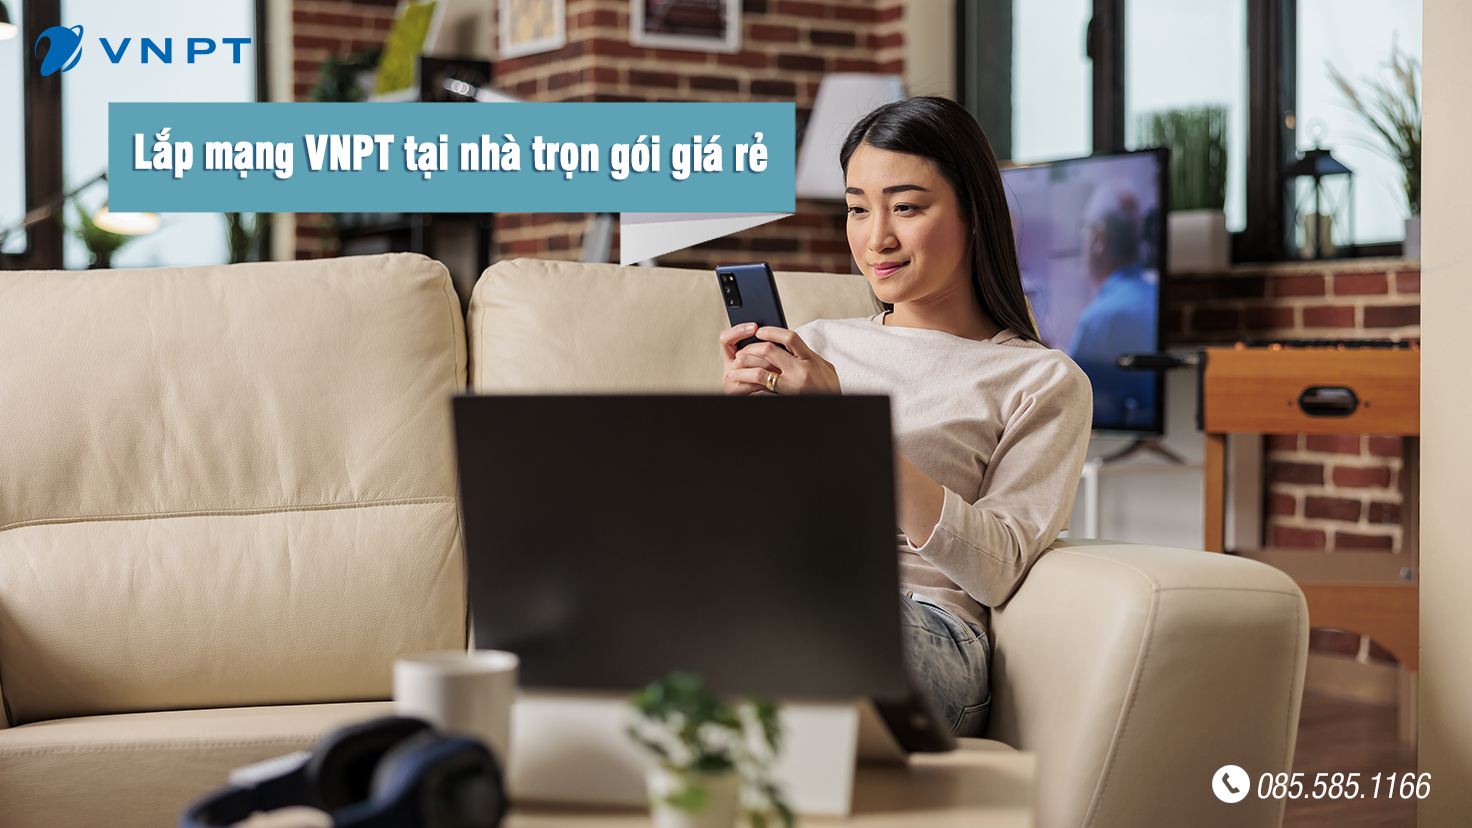 Lắp mạng VNPT tại nhà trọn gói giá rẻ